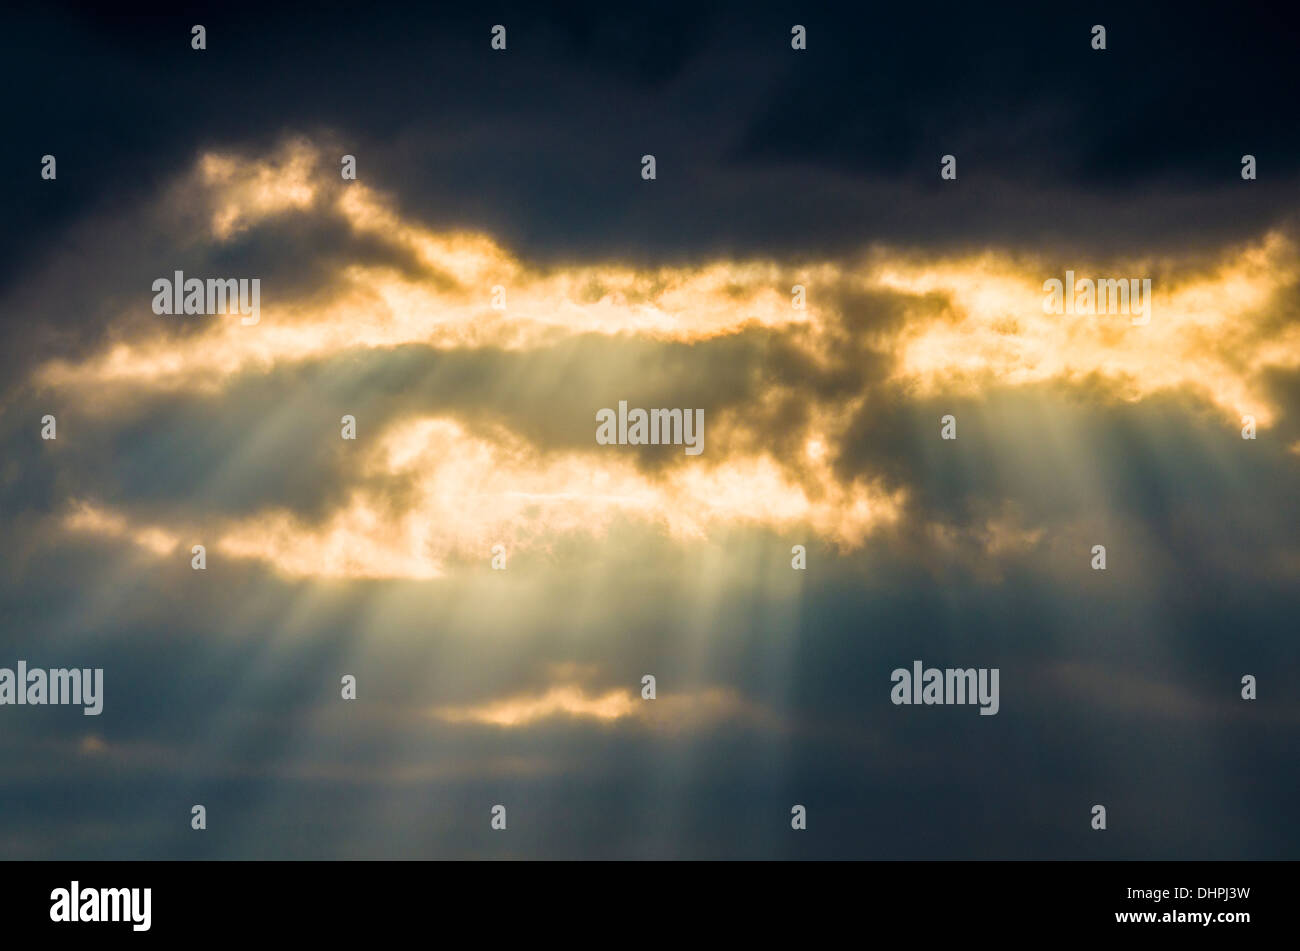 Bien que la rupture du soleil formant des nuages Rayons crépusculaires, ou Jacobs des échelles. Banque D'Images